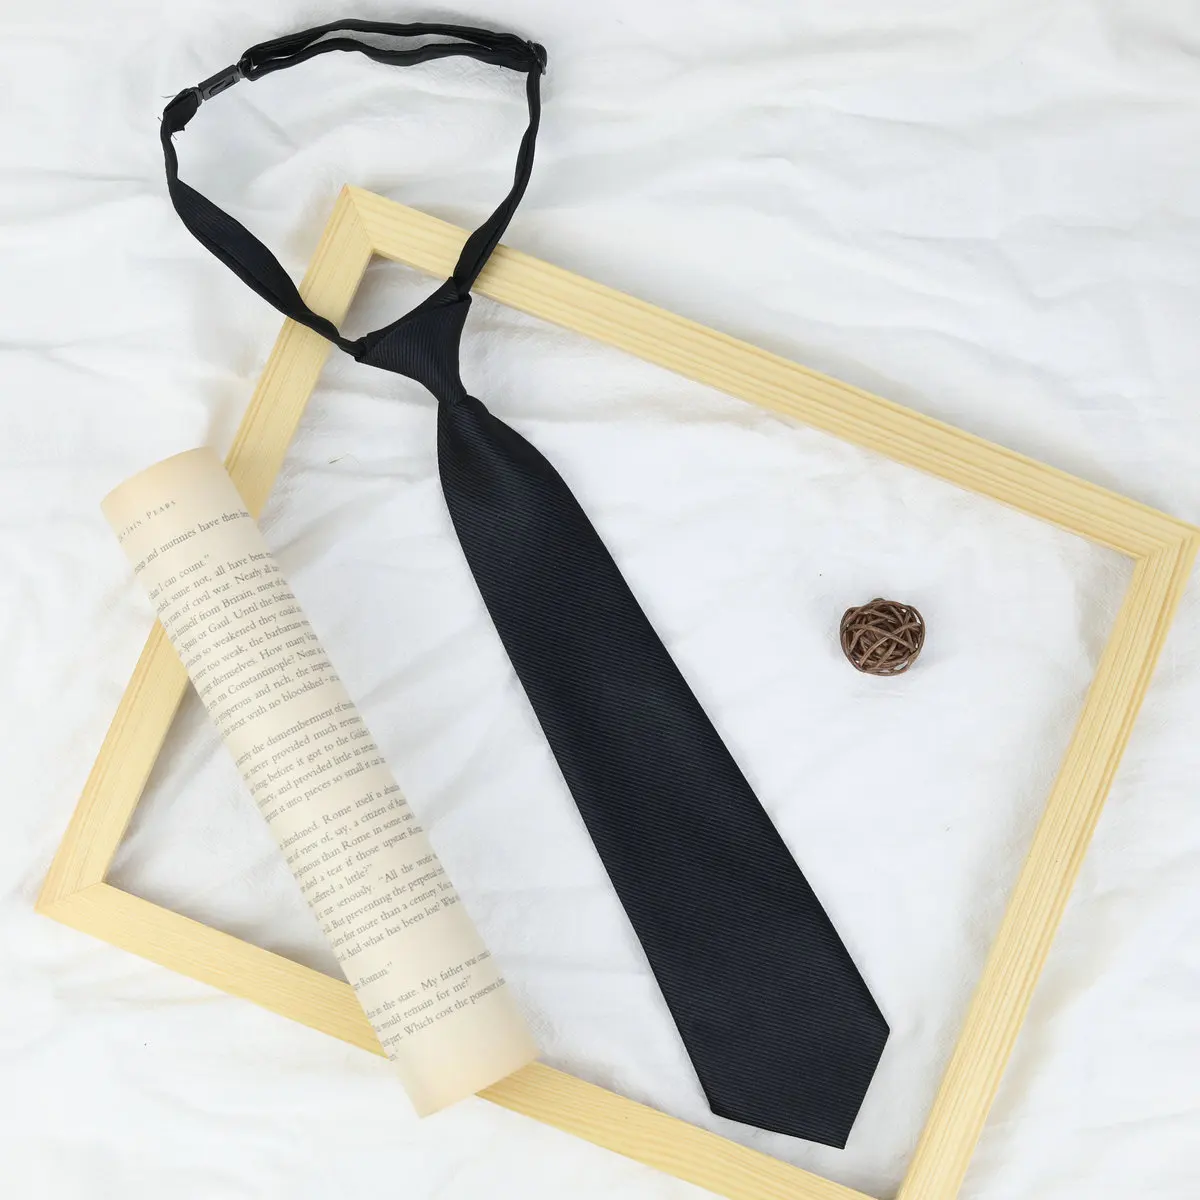 33*6cm/13*13cm JK Ties Women Plaid Neck Tie Girls Japanese Style for Jk Uniform Cute Necktie Plaid Uniform School Accessories images - 6